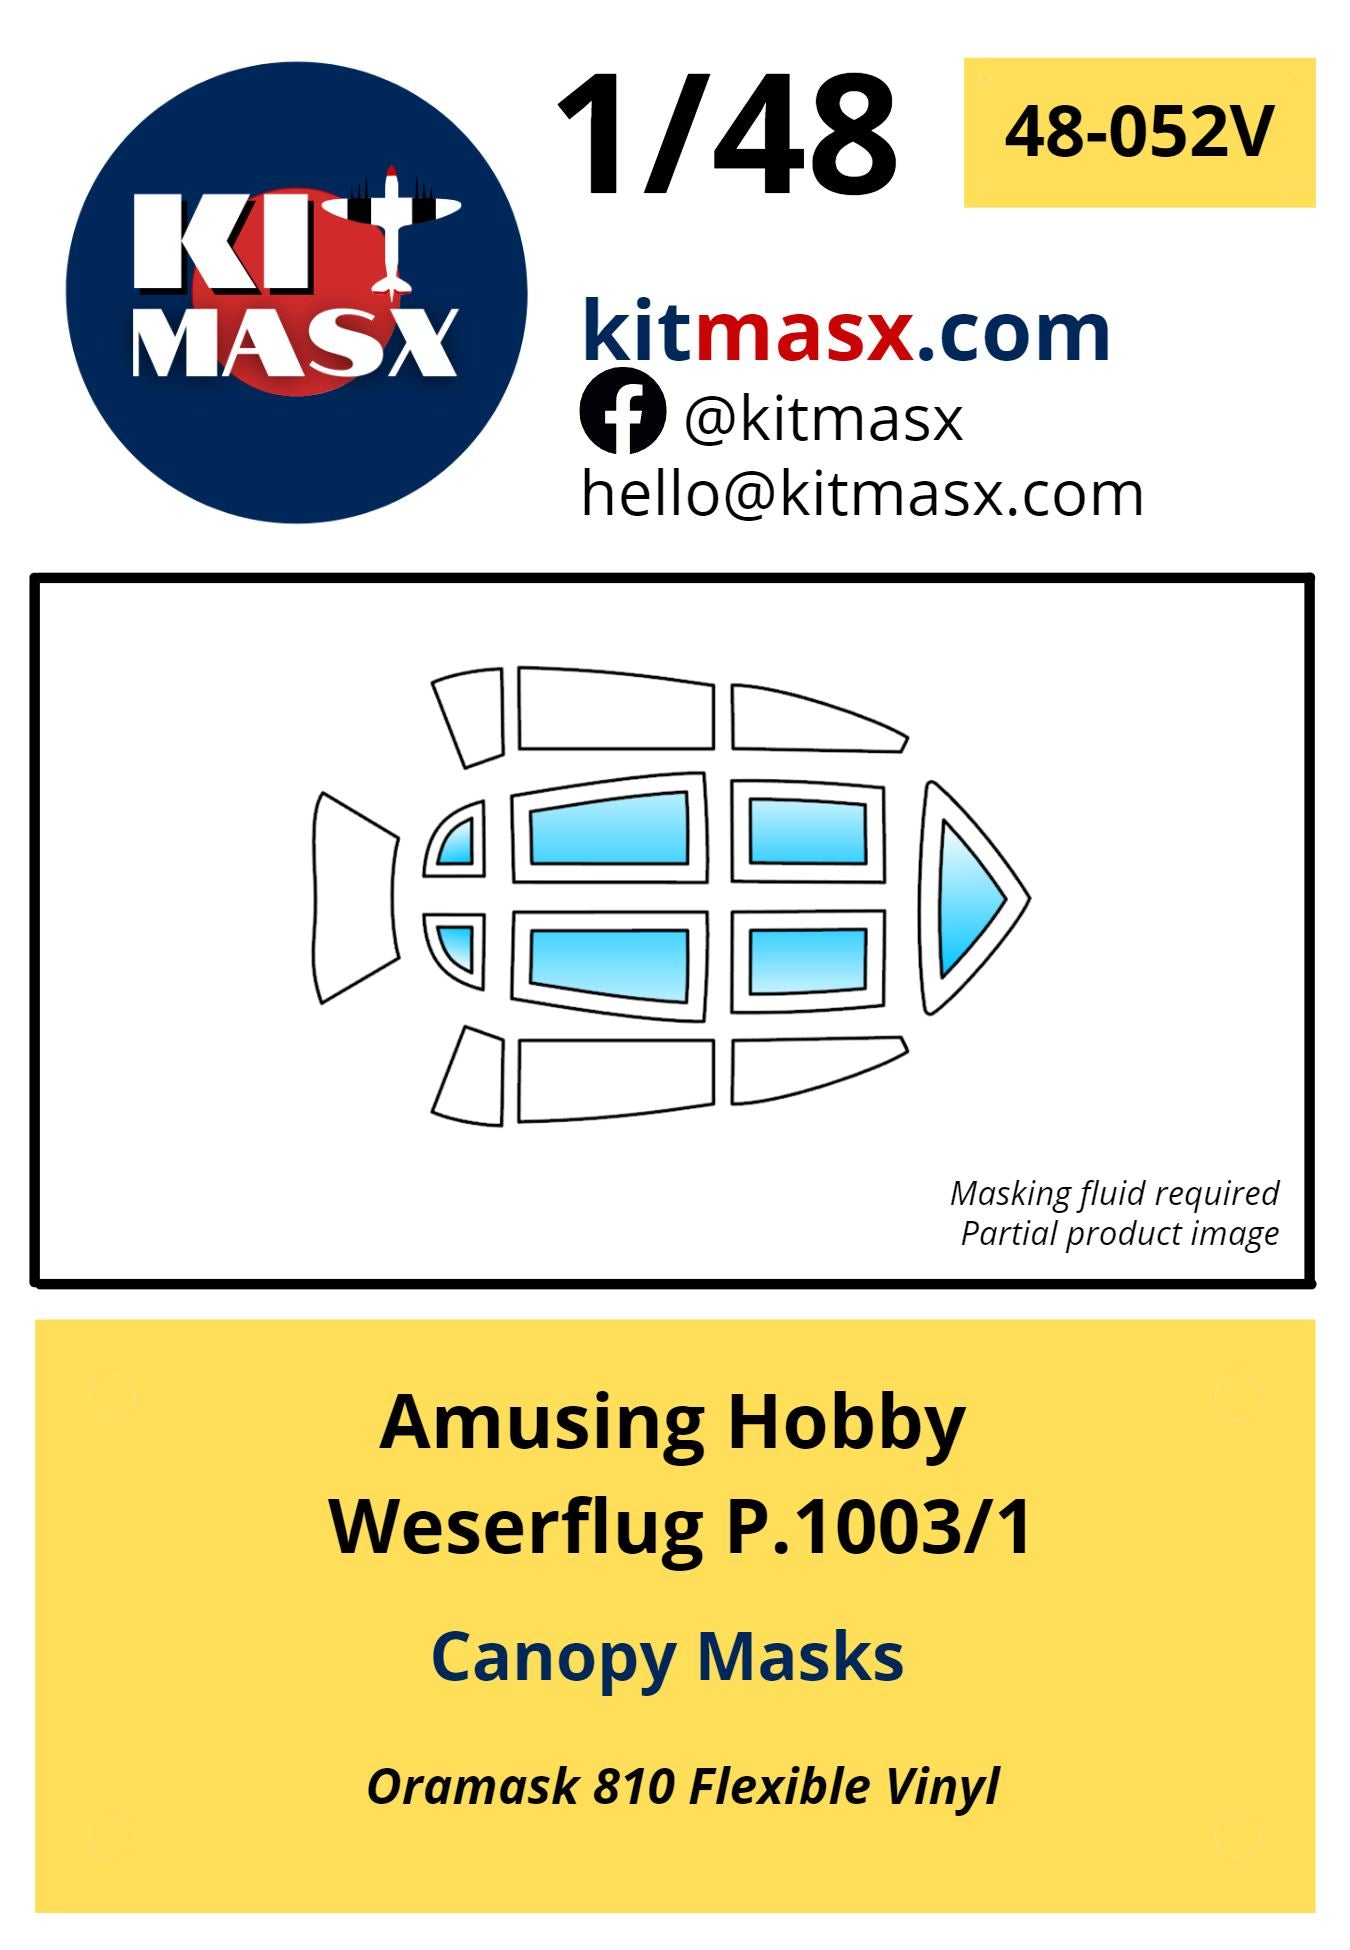 Amusing Hobby Weserflug P.1003/1 Canopy Masks Kit Masx 